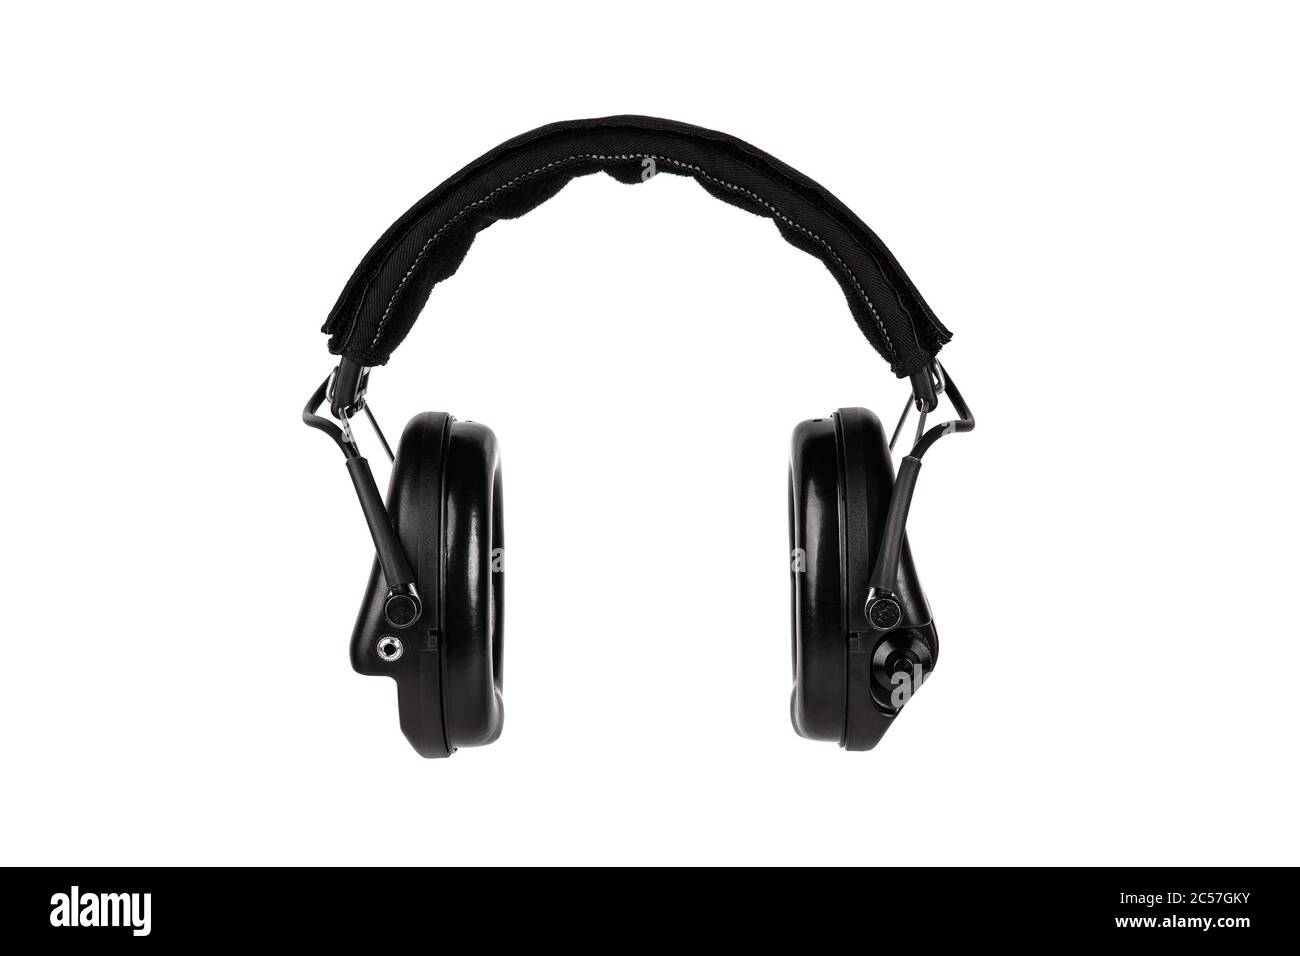 Moderne aktive Schutzohrhörern isolieren auf weißem Hintergrund. Ein Gerät zum Schutz von Ohren und Gehör vor lauten Geräuschen. Kopfhörer für Aufnahmen mit Stockfoto